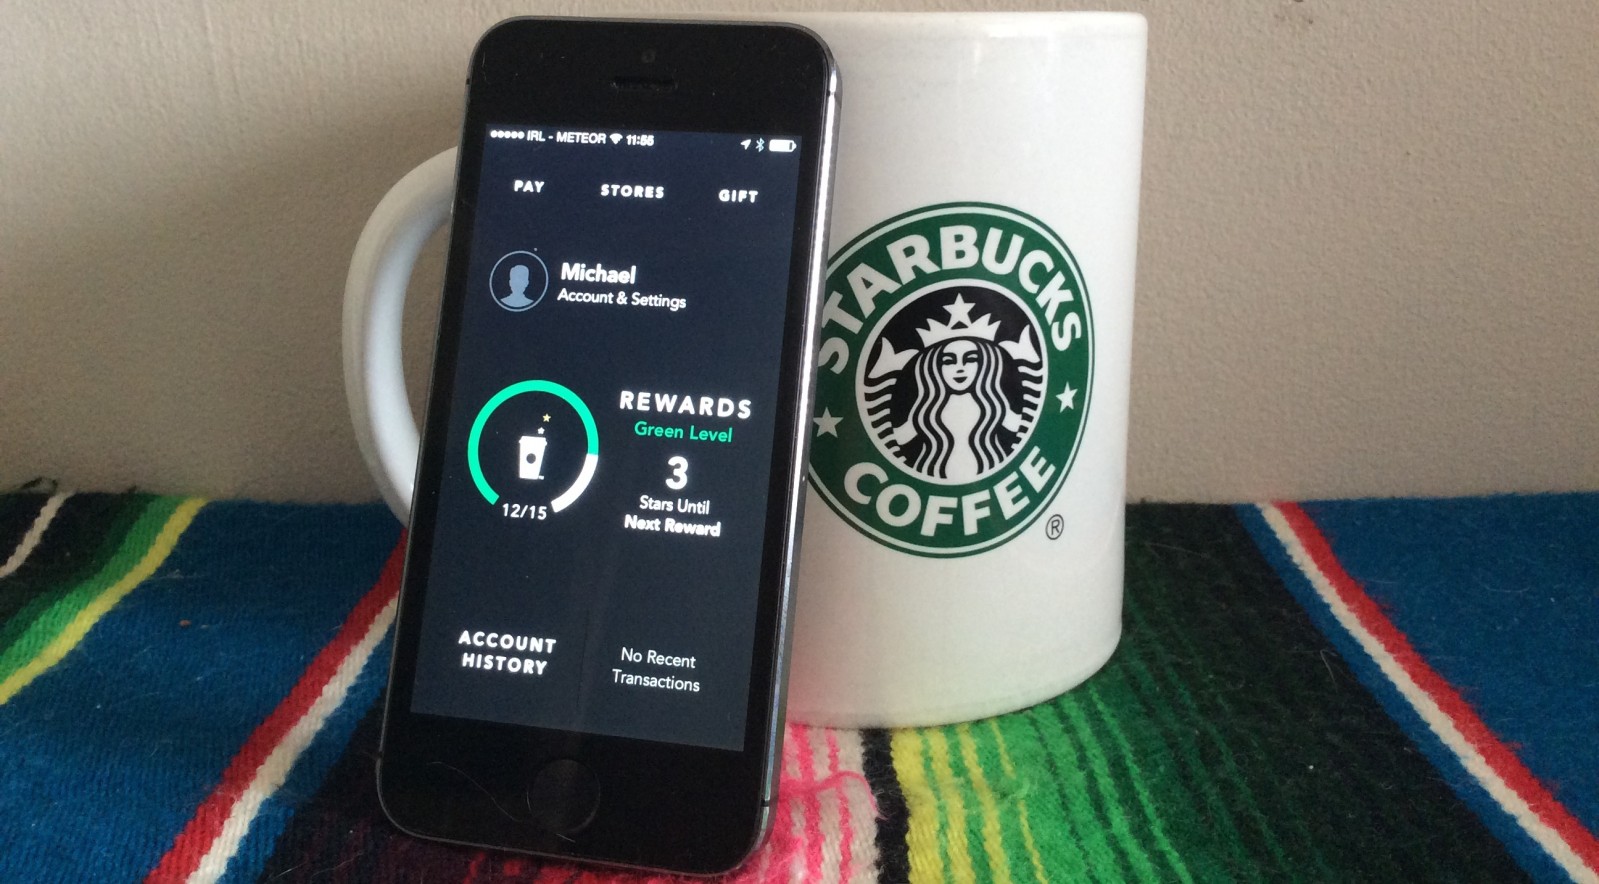 Công nghệ này sẽ giúp Starbuck phân chia đồng đều các đơn hàng